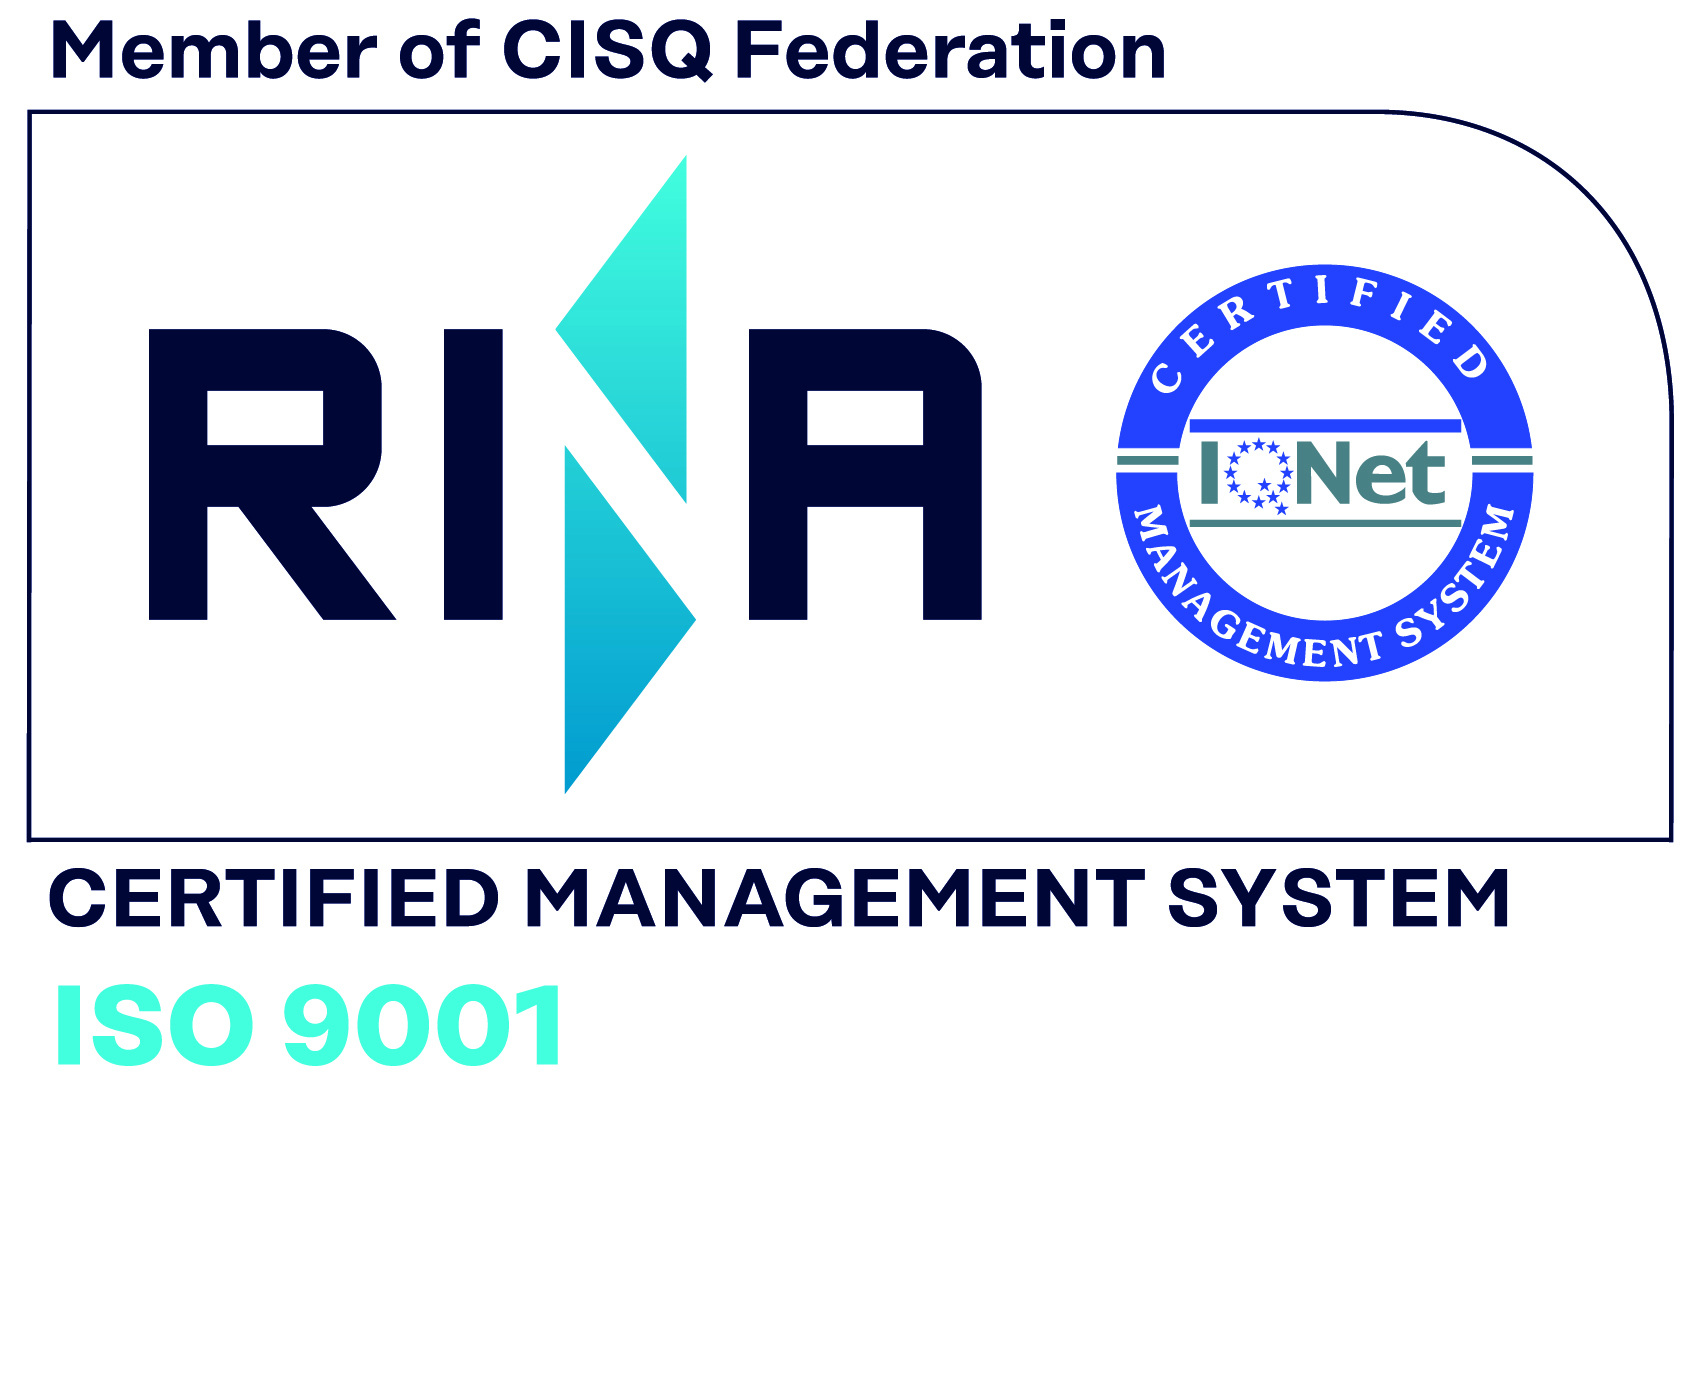 Azienda Certificata ISO 9001/2008 N°31770/15/S